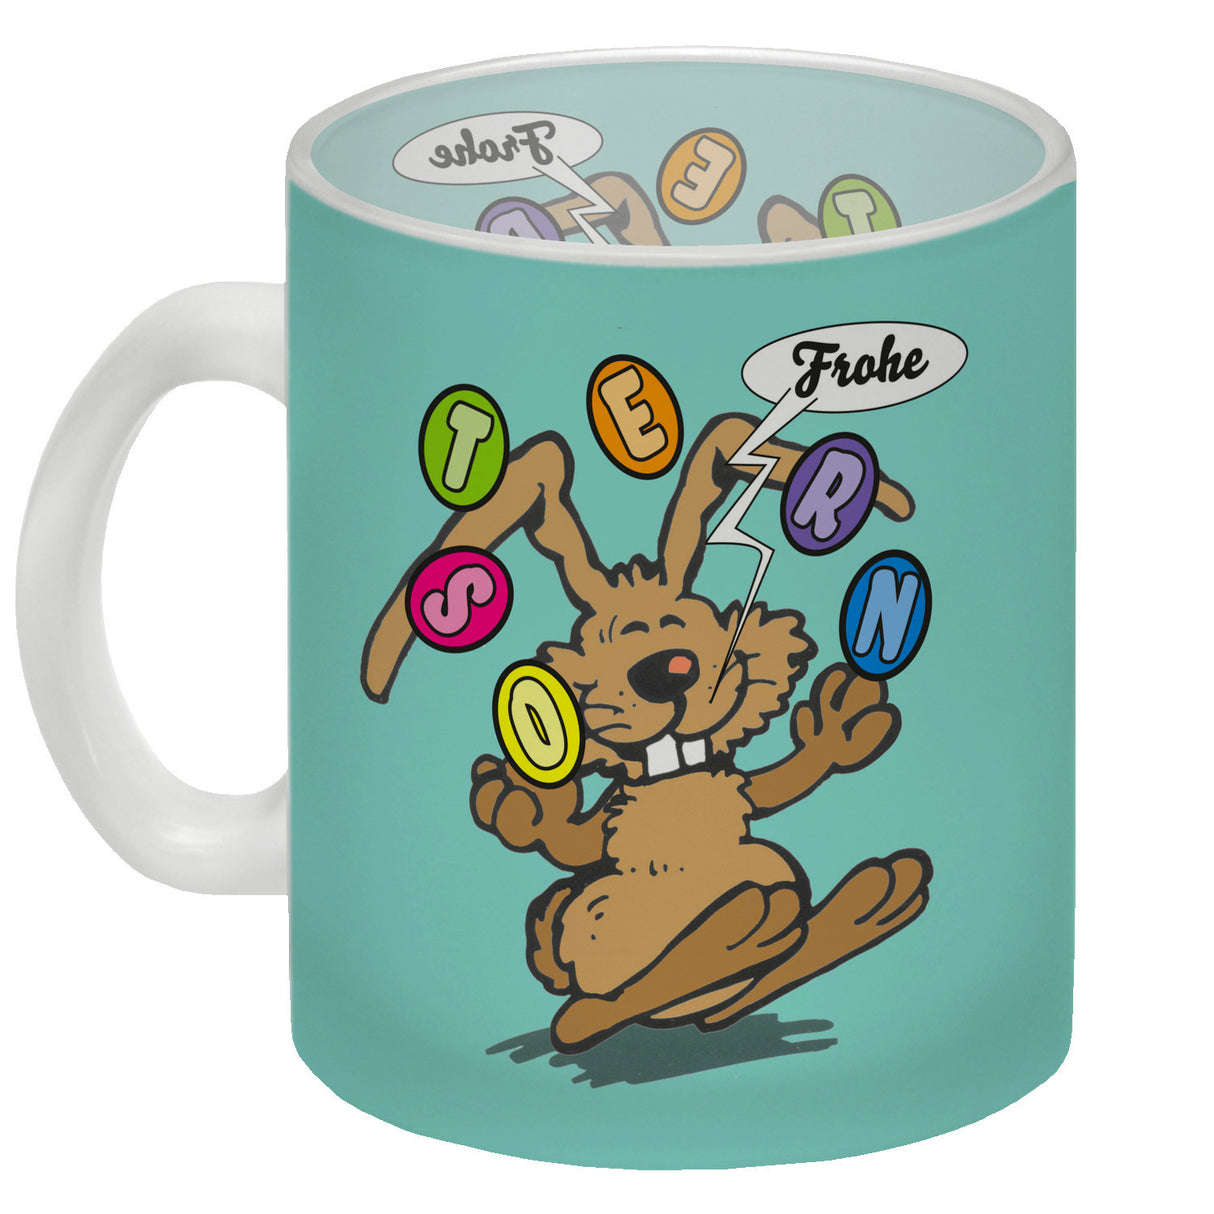 Frohe Ostern! Osterhase jongliert mit Ostereiern Kaffeebecher in {weiß}